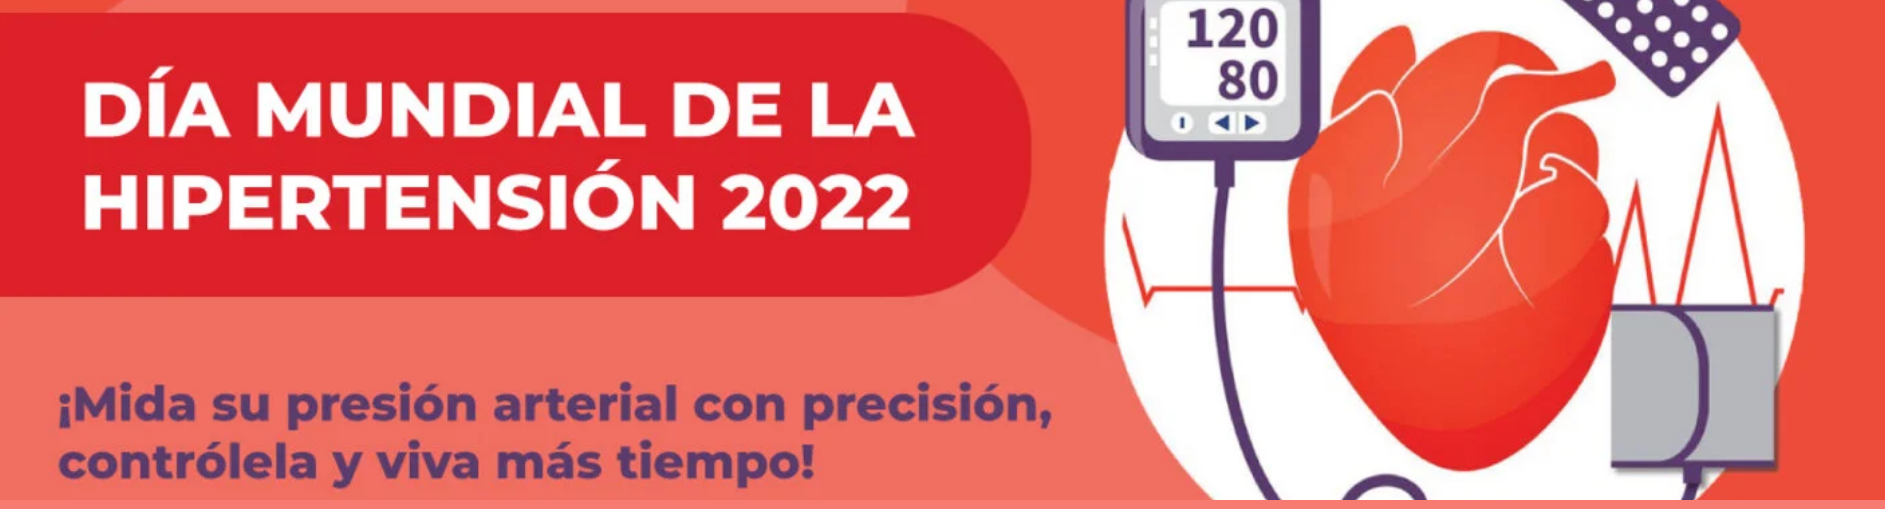 Día Mundial Hipertensión 2022